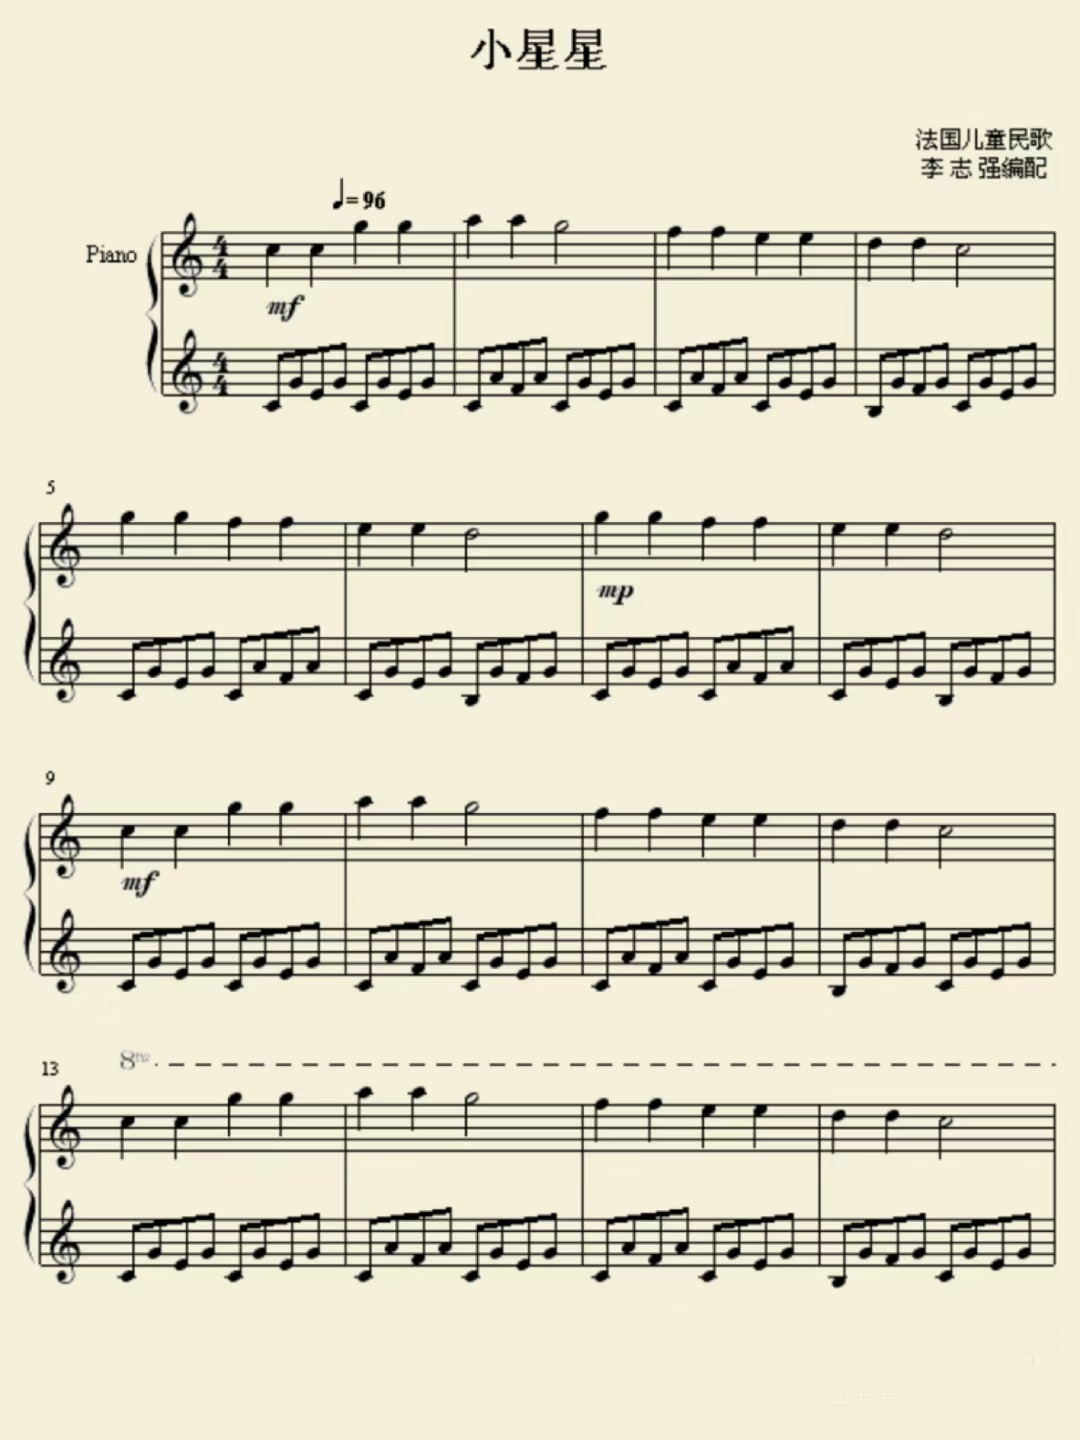 《小星星》的钢琴谱曲谱